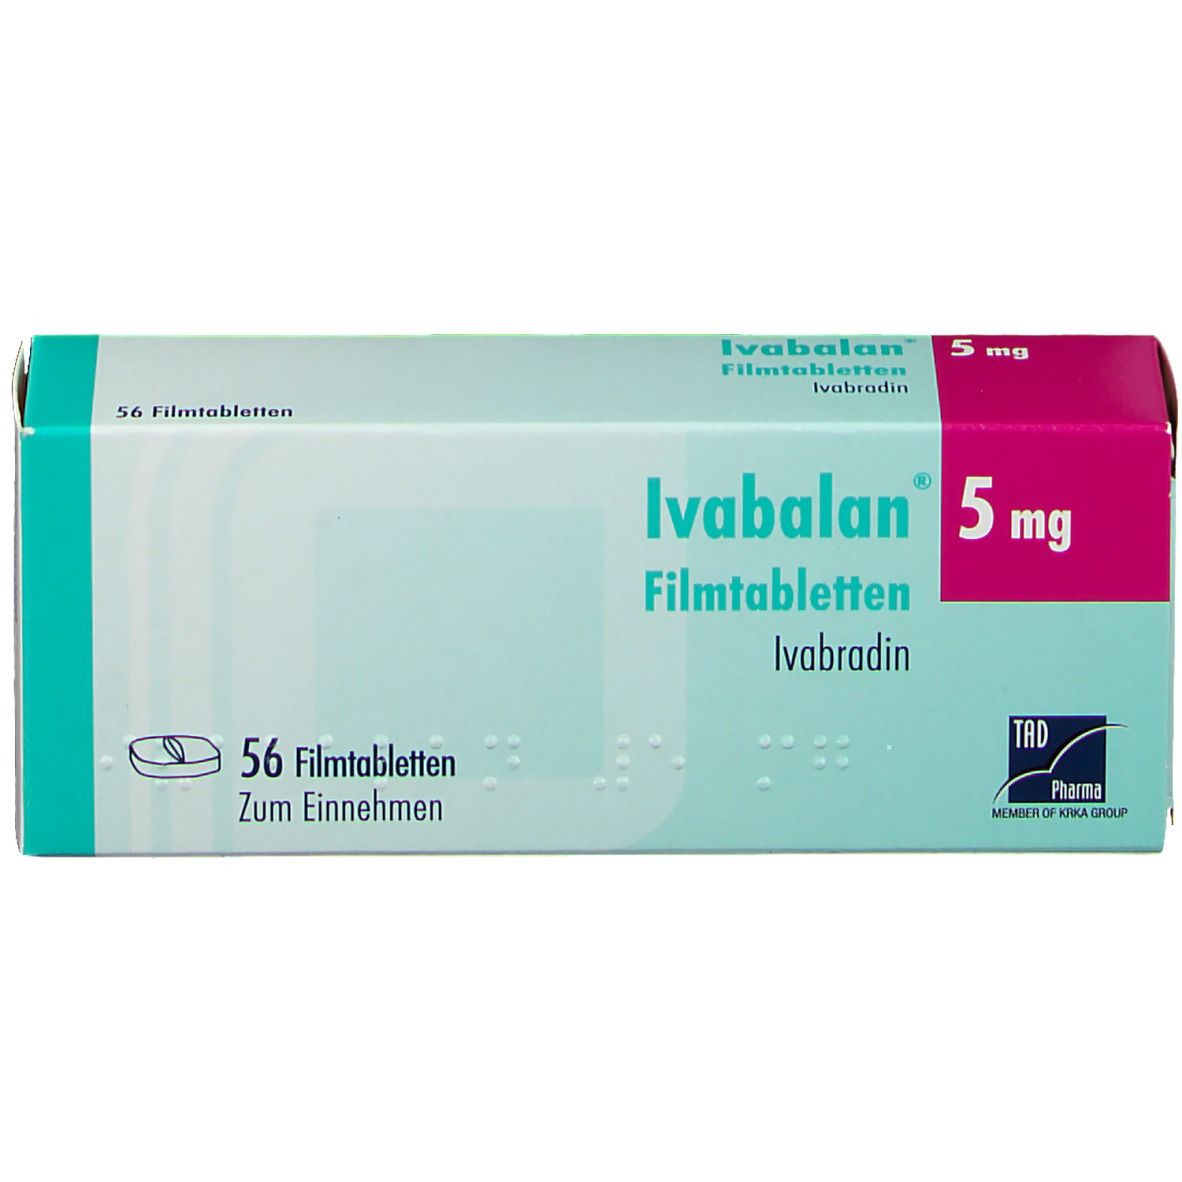 Ivabalan® 5 mg